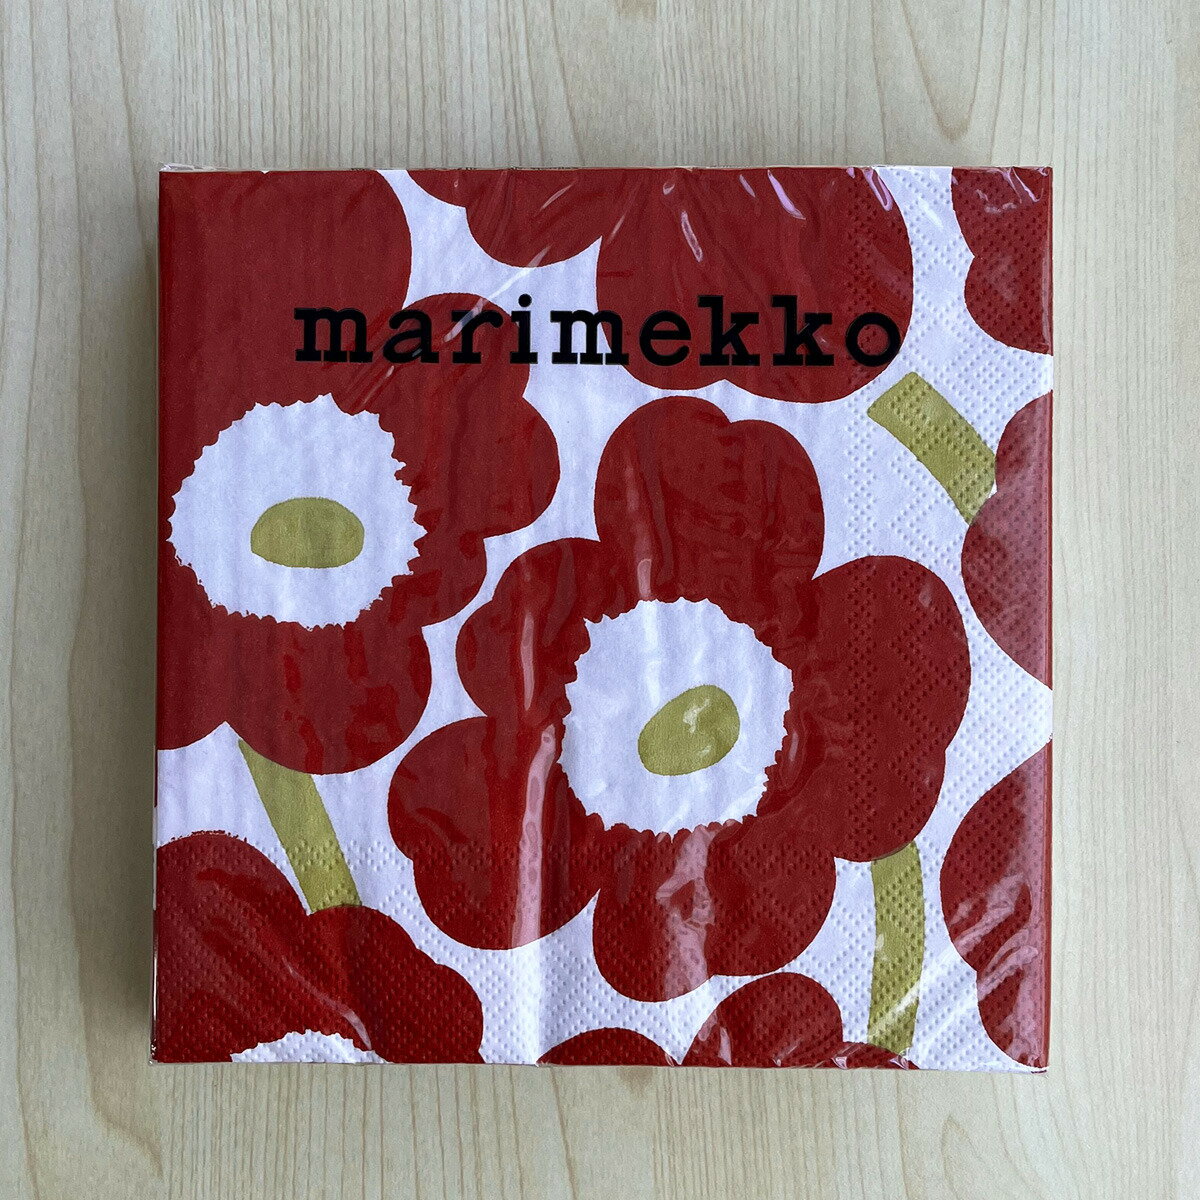 マリメッコ marimekko ペーパーナプキン 紙ナプキン ランチサイズ 20枚 552615 UNIKKO ウニッコ dark red gold ホワイト+ダークレッド系 北欧